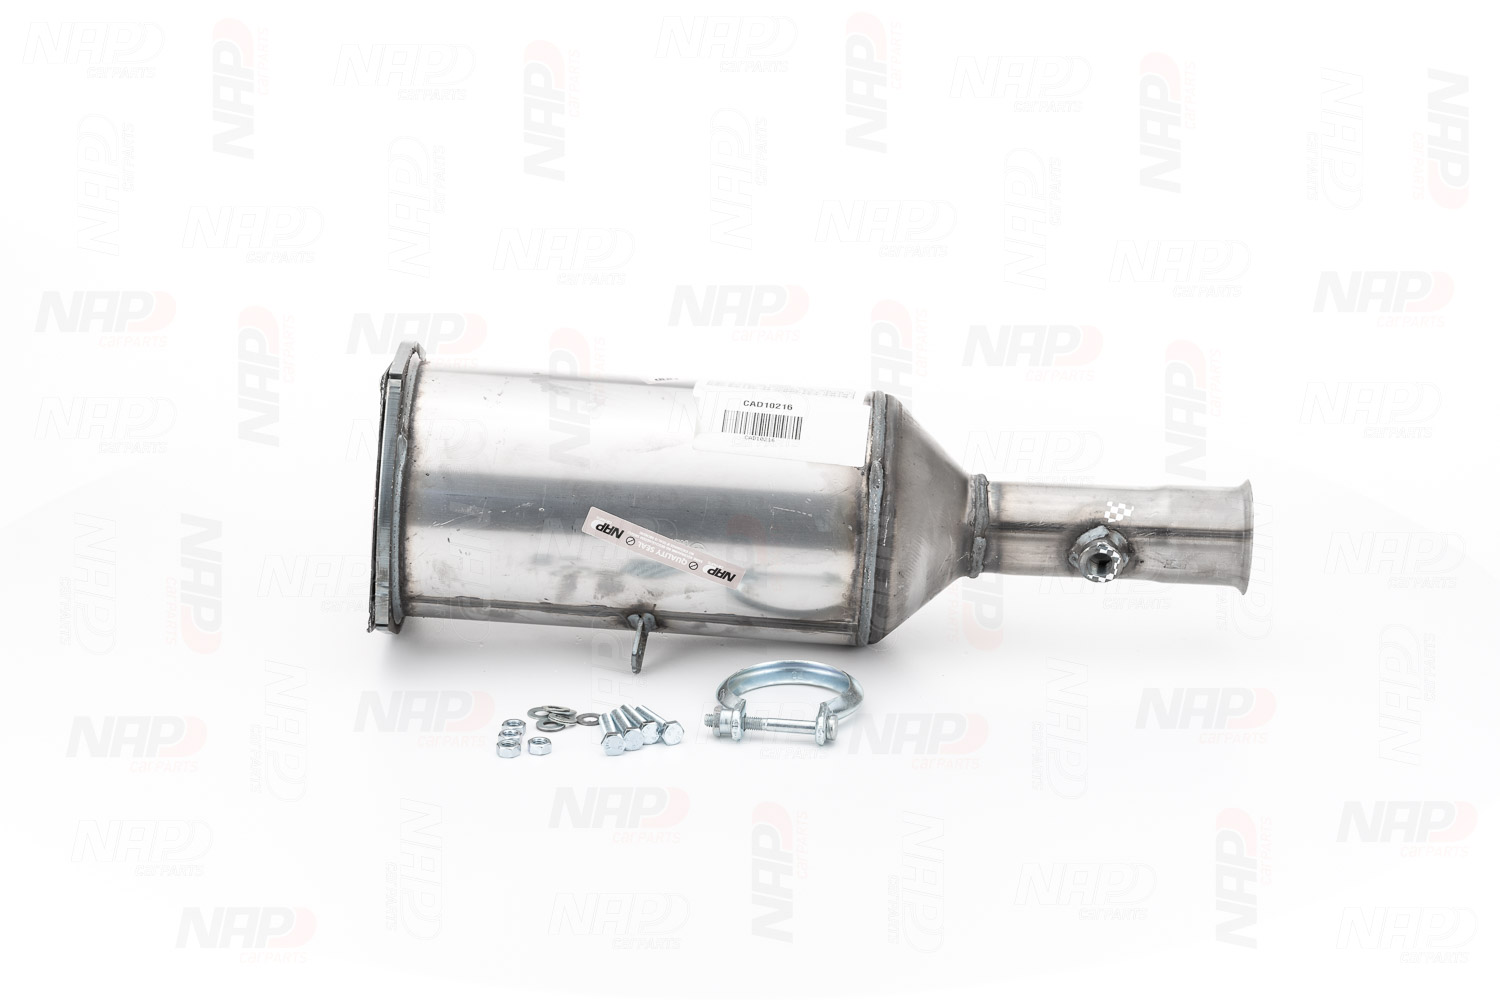 NAP carparts CAD10216 Peugeot 307 2017 Exhaust filter